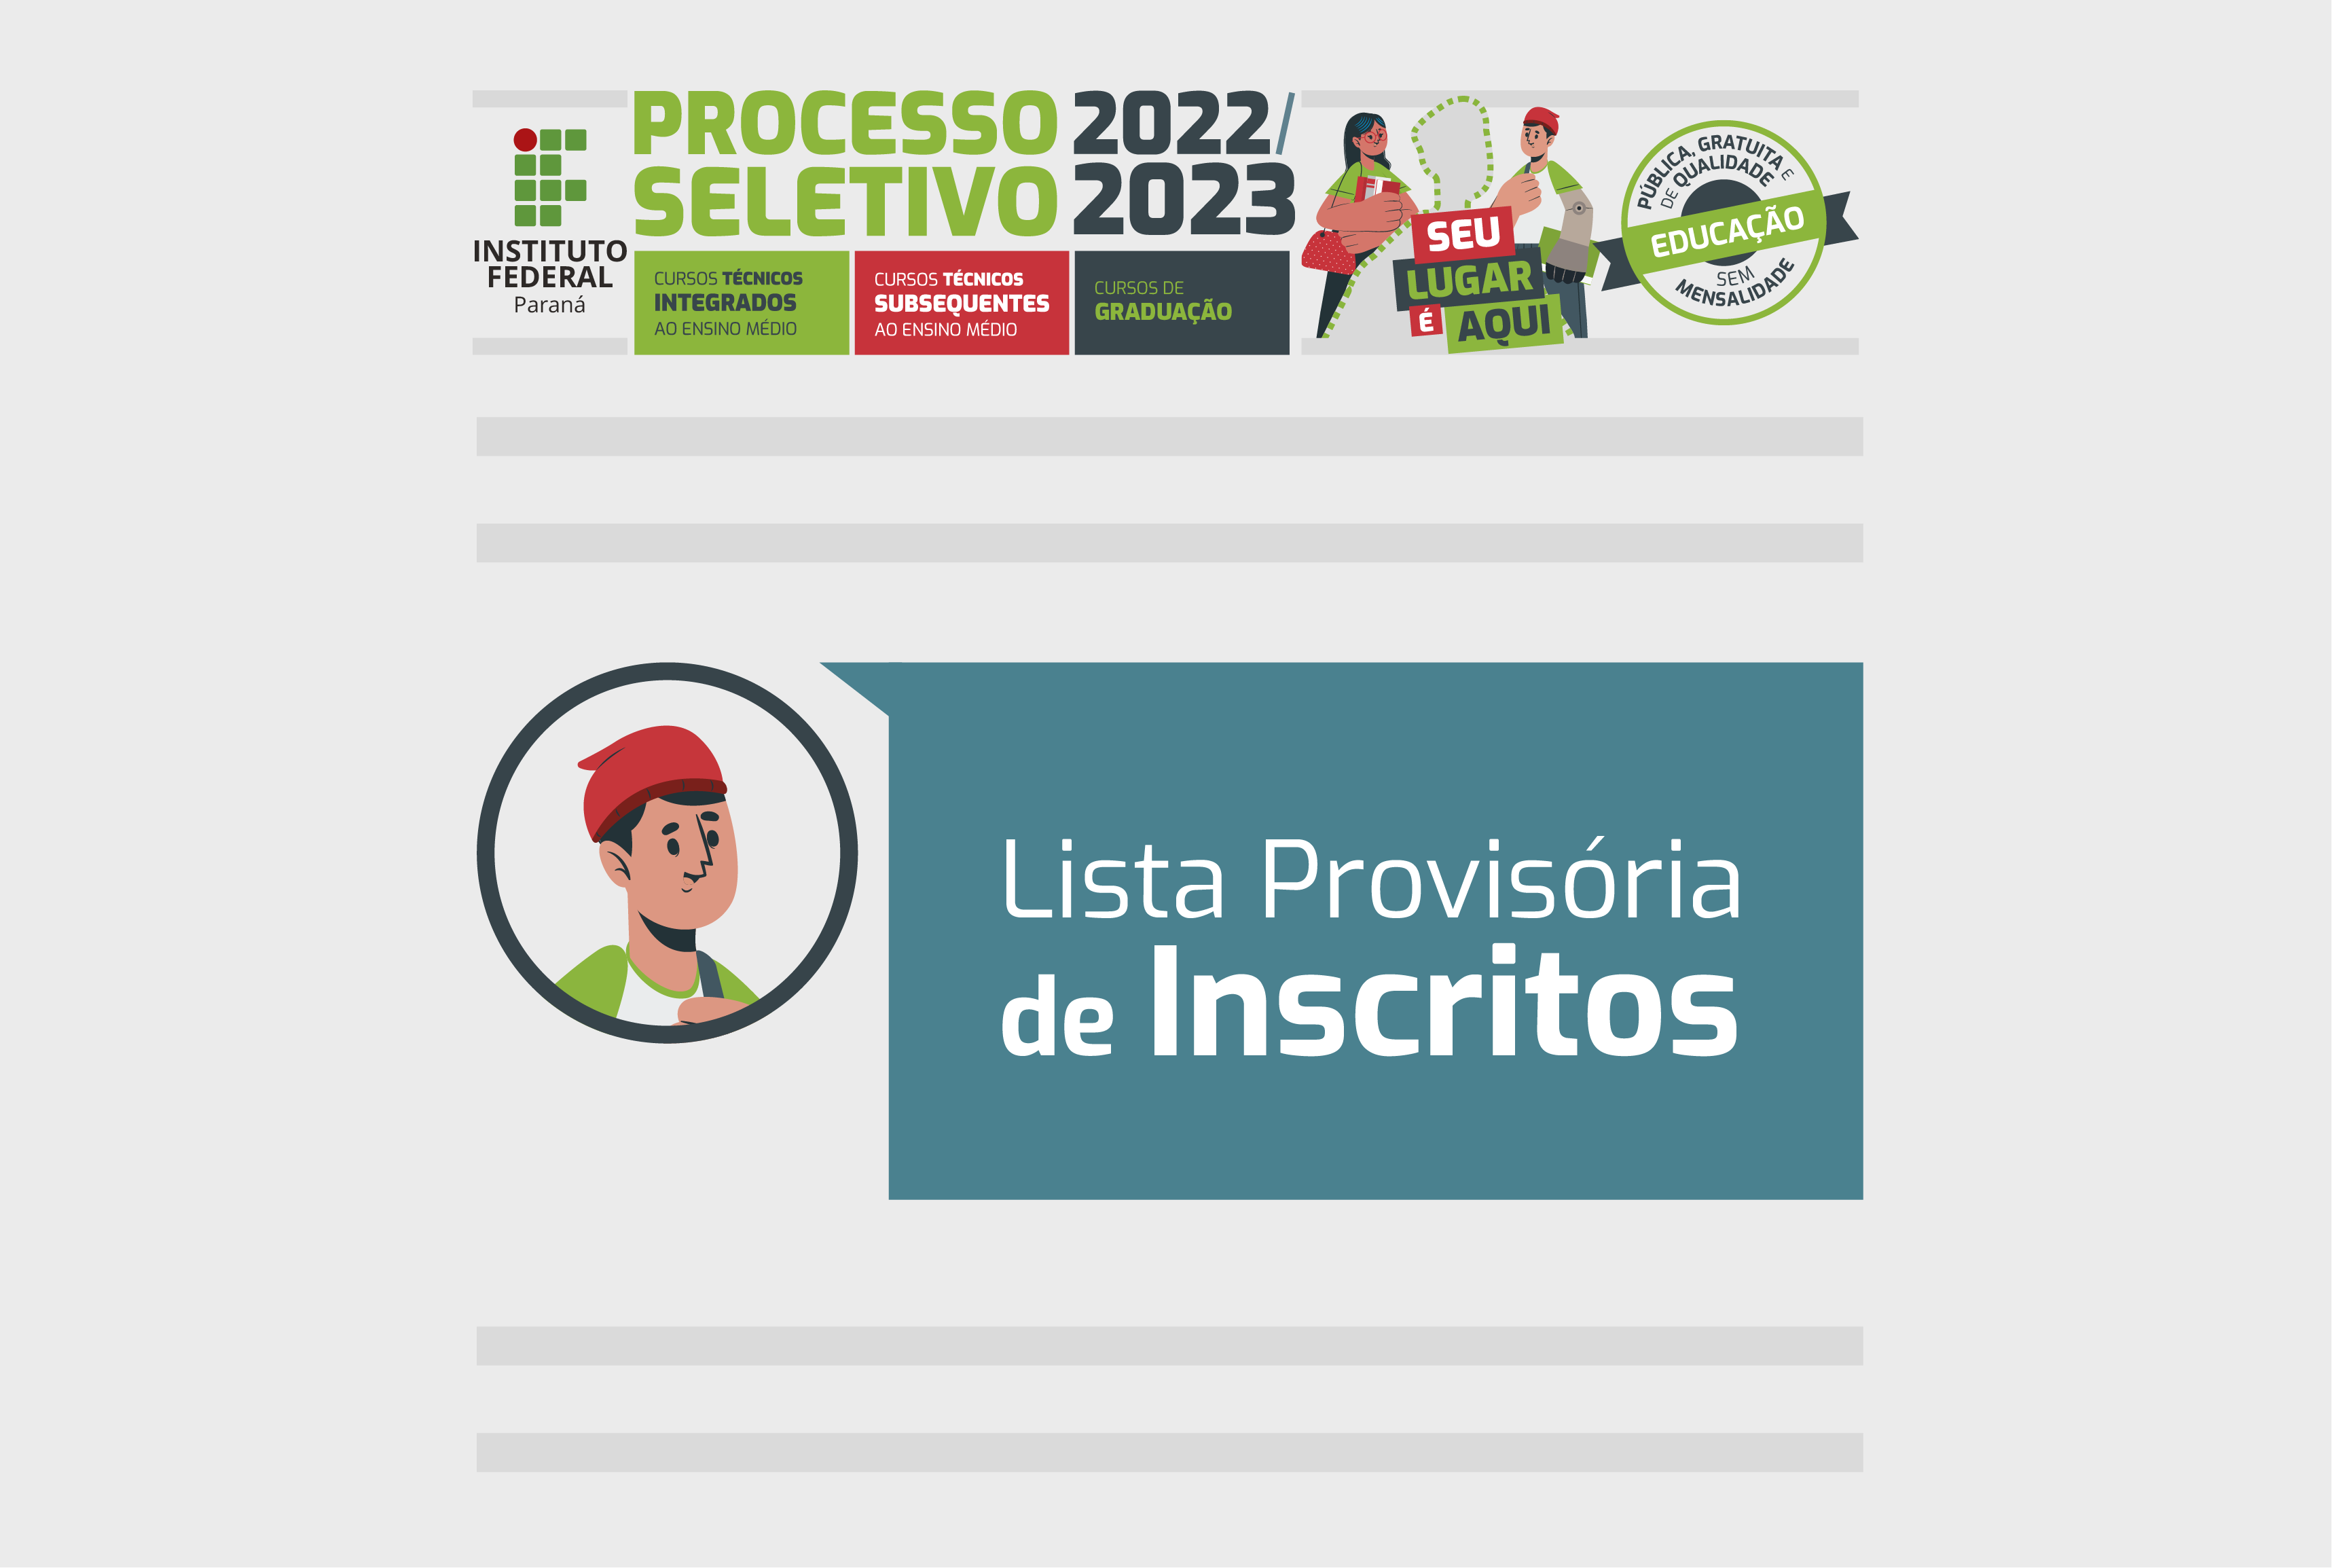 Imagem colorida. No topo, está o título "Processo Seletivo 2022/2023", abaixo, centralizado, está o texto: "Lista provisória de inscritos".